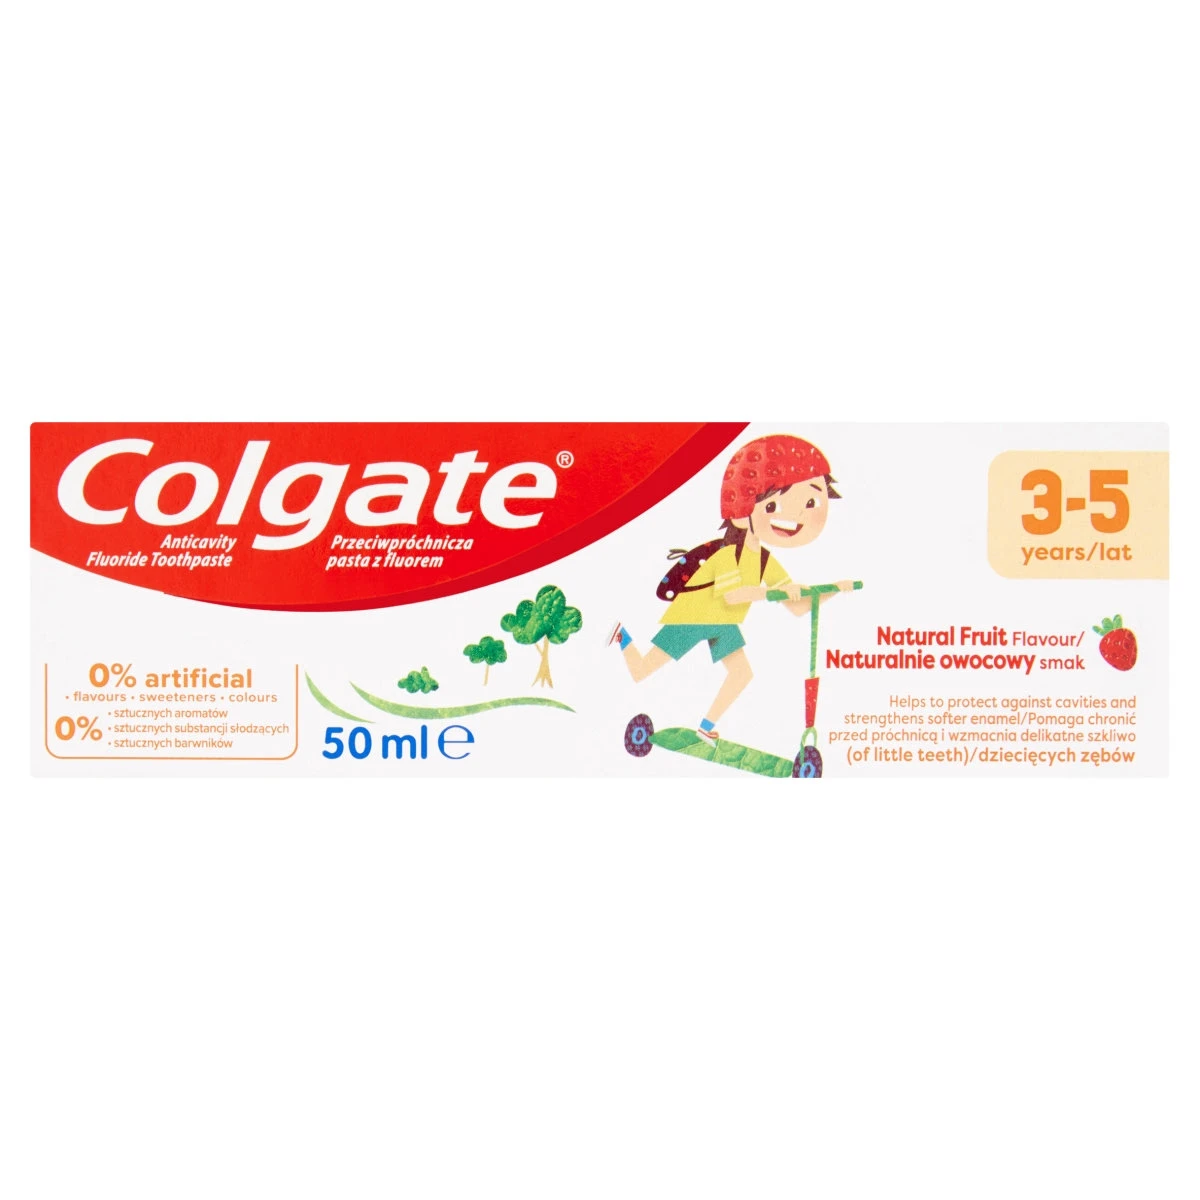 Colgate Natural Fruit fogkrém 3 5 éves korig 50 ml